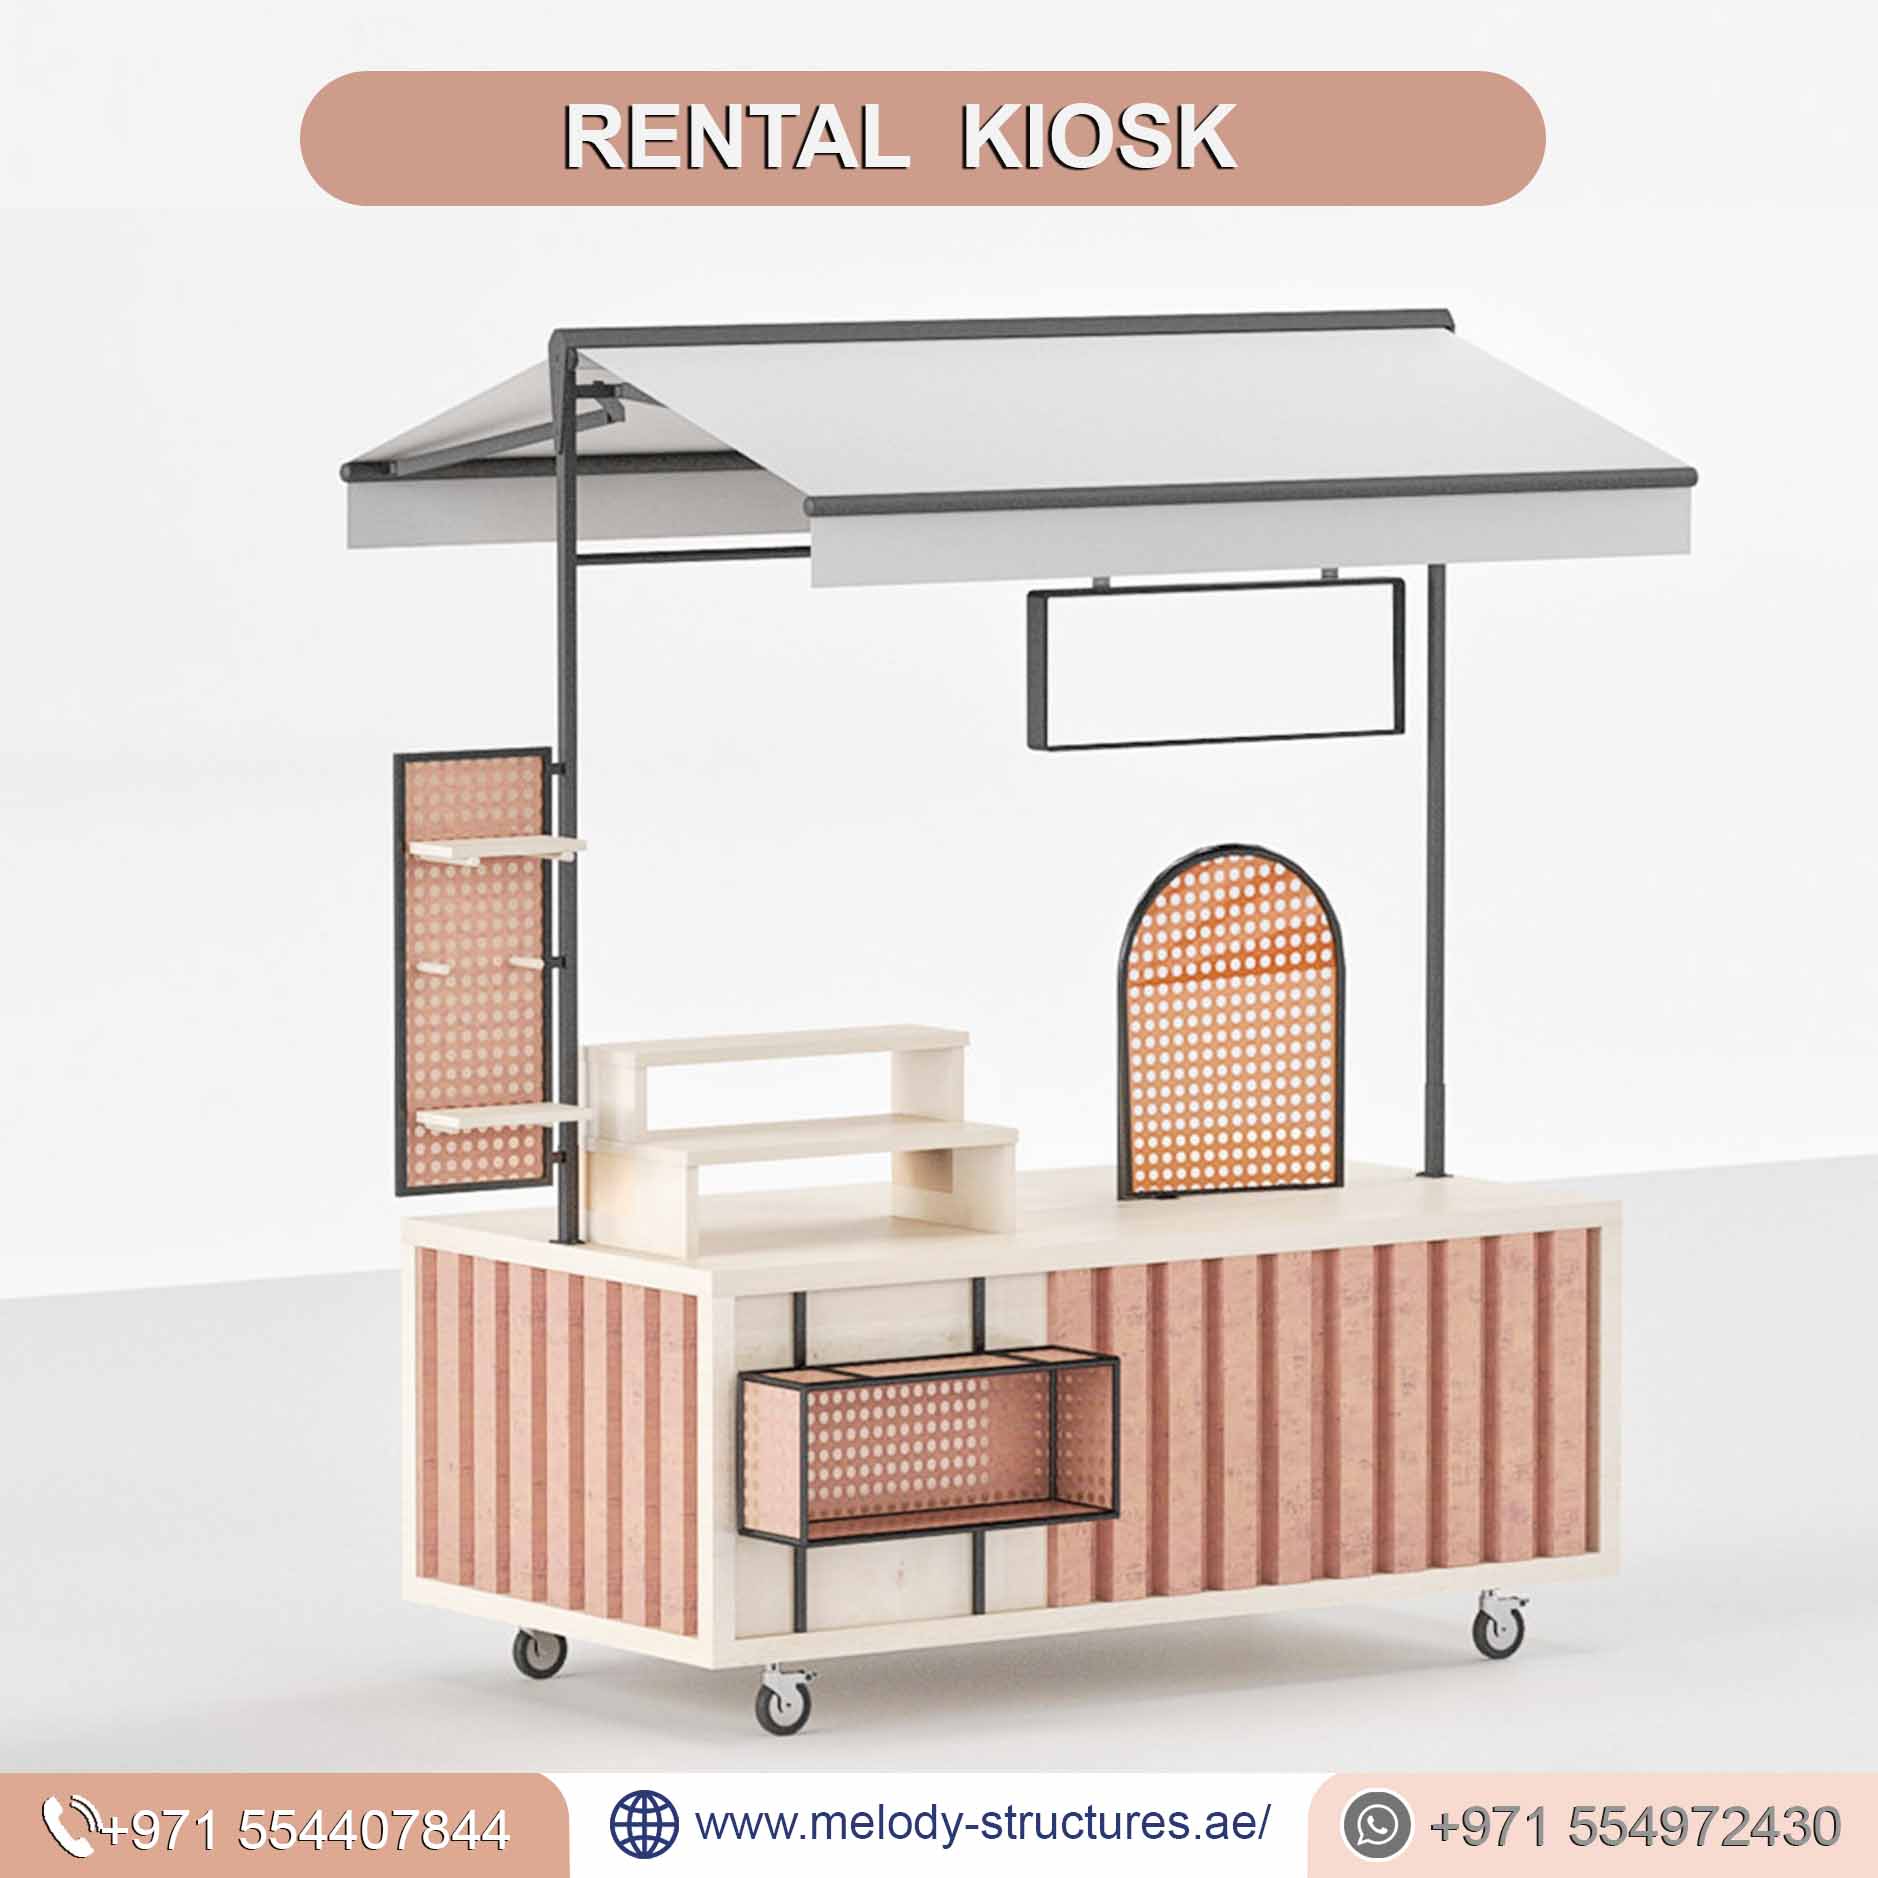 Rental Kiosk Company in UAE, Rental Kiosk For Events (1).jpg